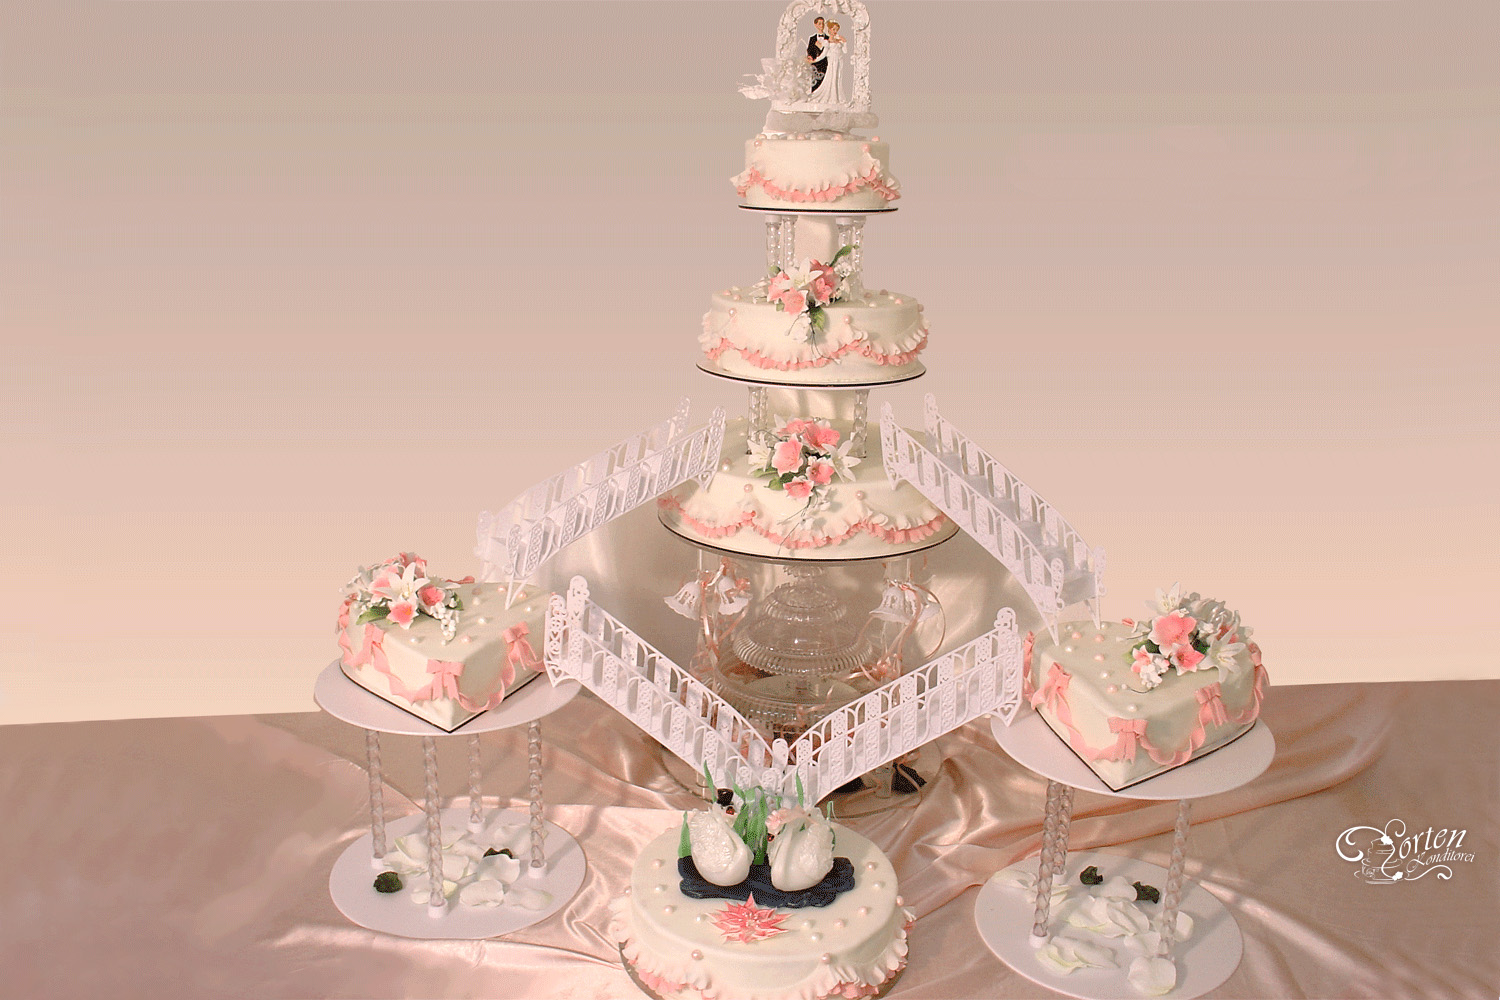 Sehr feierliche, rosa-weiße Hochzeits-Torte mit Wasserfall und Treppen. Dekoriert mit Blumenbuketts, Perlen, Schleifen und Rüschen. Unten sind handgefertigte Zucker-Schwaene.